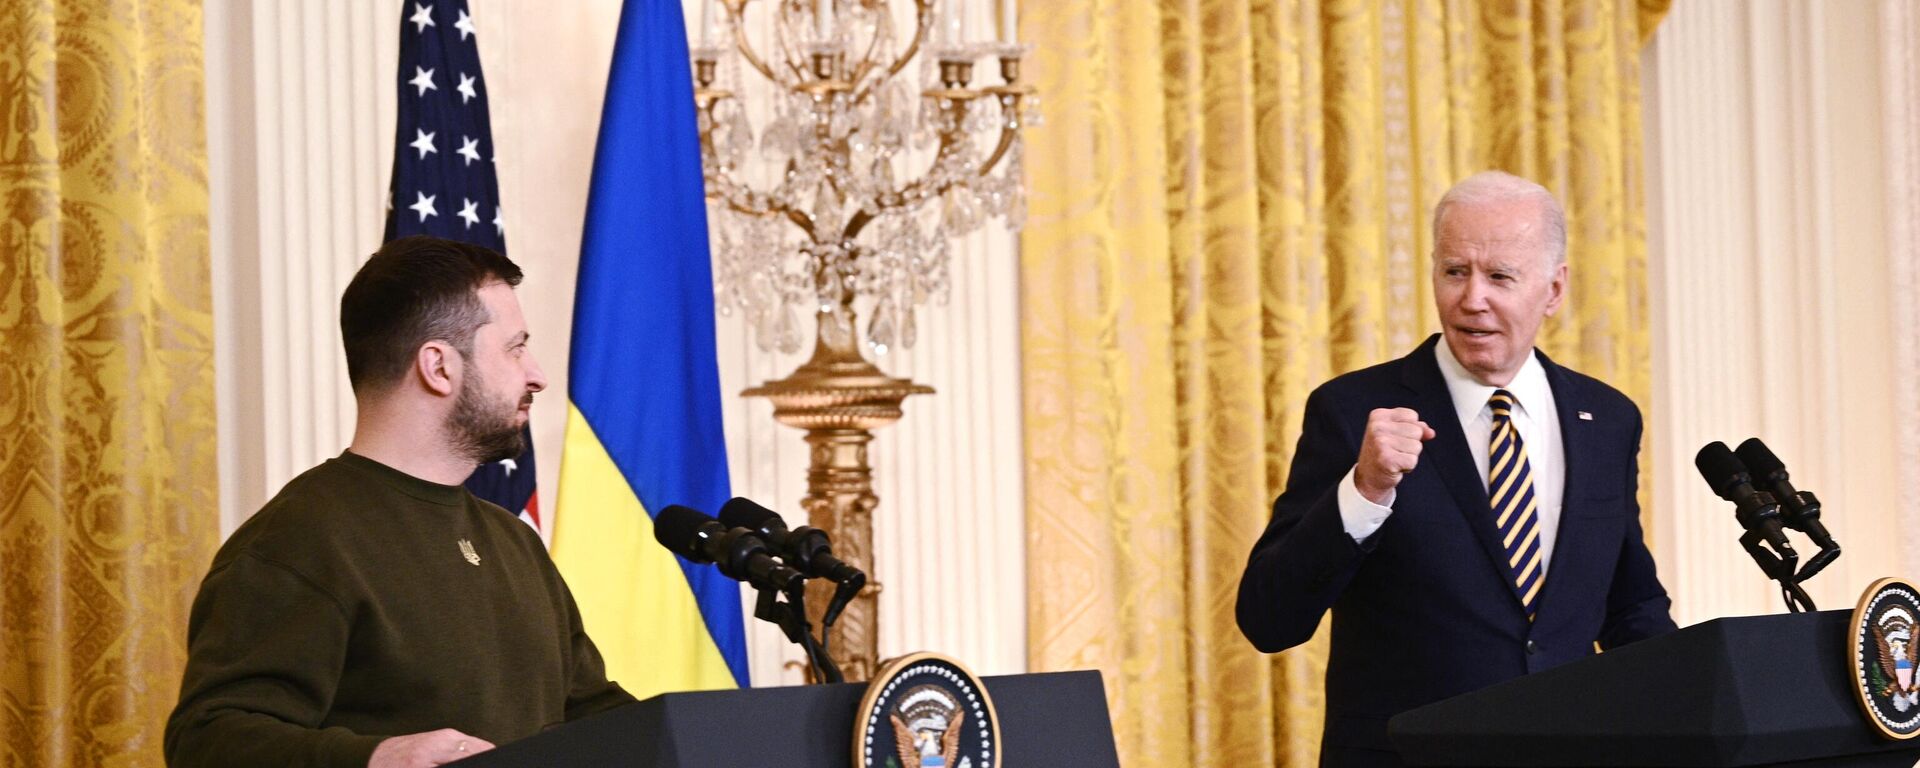 El presidente de EEUU, Joe Biden, con su homólogo de Ucrania, Volodímir Zelenski, en conferencia de prensa el 21 de diciembre de 2022 - Sputnik Mundo, 1920, 07.03.2023